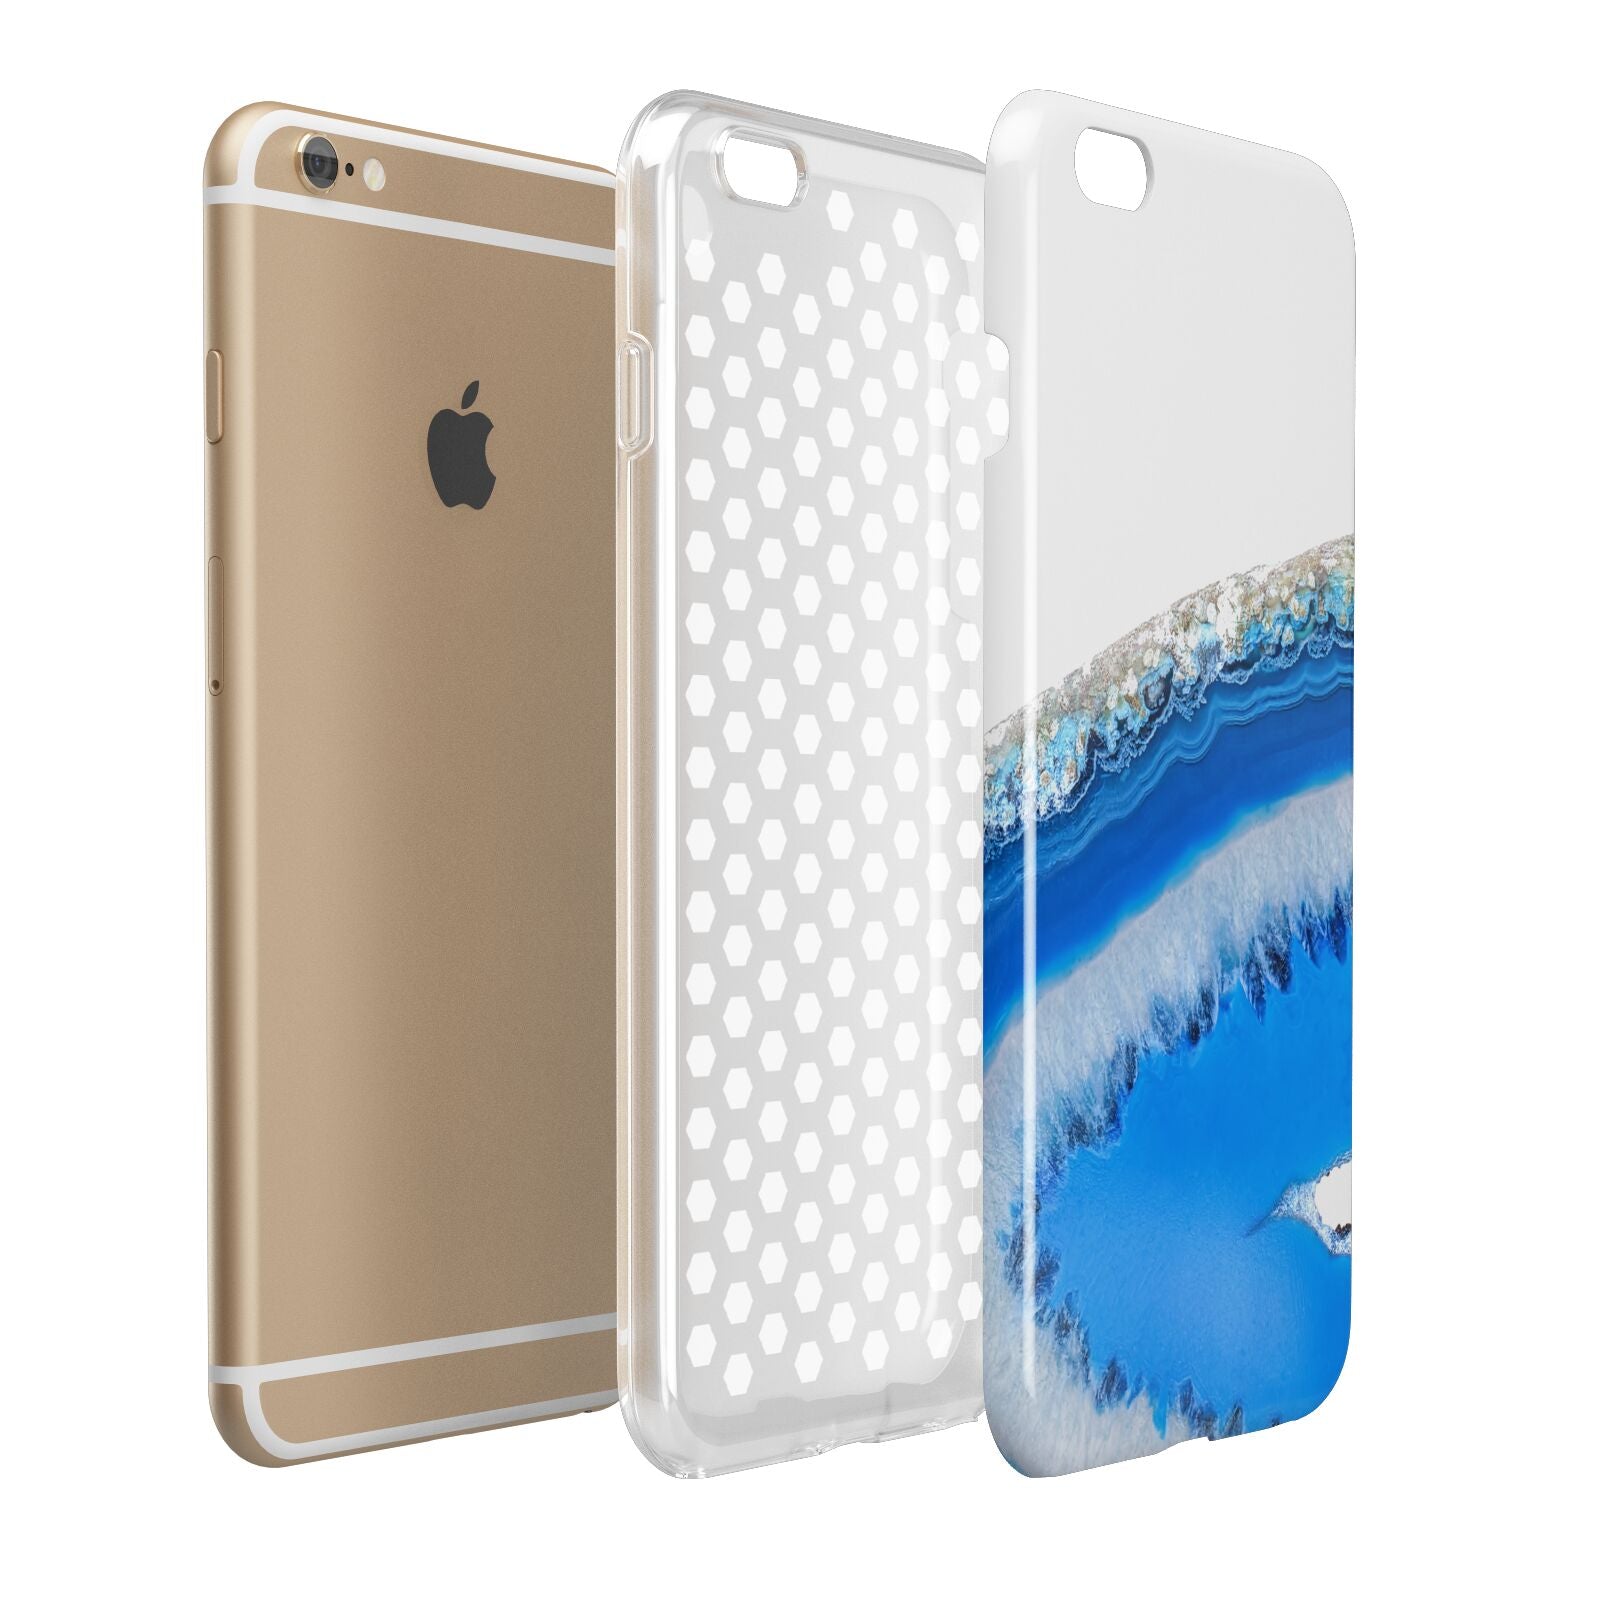 Agate Blue Apple iPhone 6 Plus 3D Tough Case Expand Detail Image